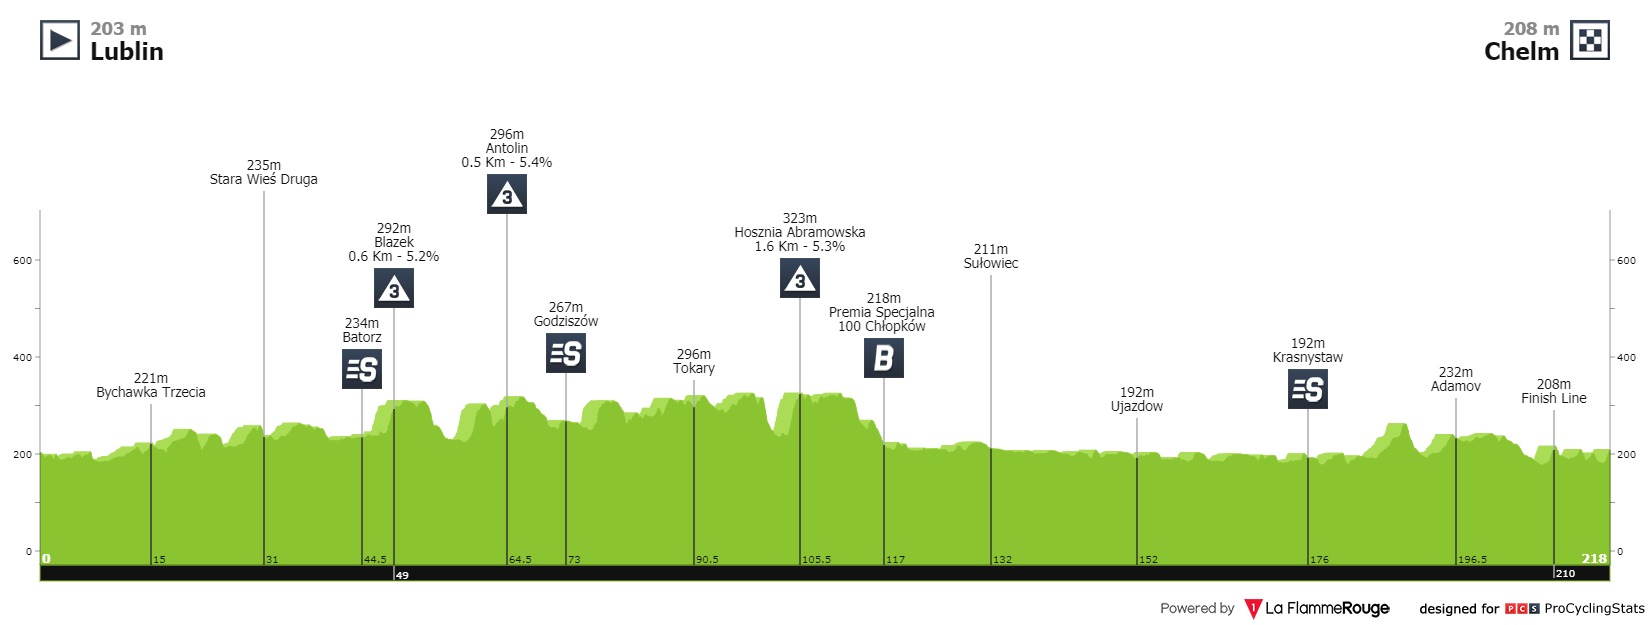 tour-de-pologne-2021-stage-1-profile-01814e728c.jpg